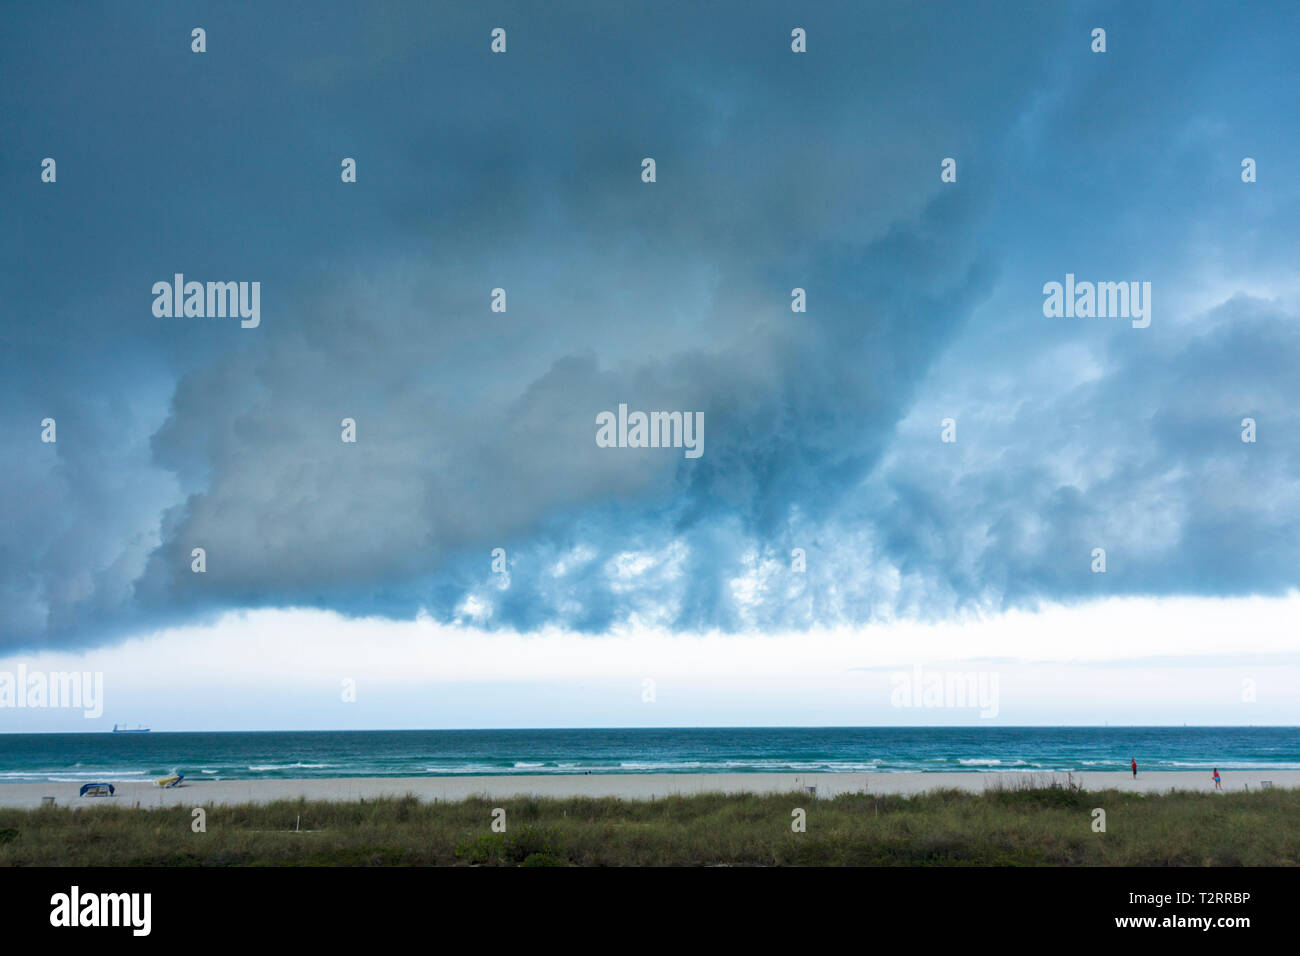 Miami Beach Florida, Atlantischer Ozean, Wasser, Kaltfront, Wetter, Sturm, stürmisch, grau, Wolken, bewölkt, bedrohlich, ominös, dunkler Himmel, FL090417029 Stockfoto